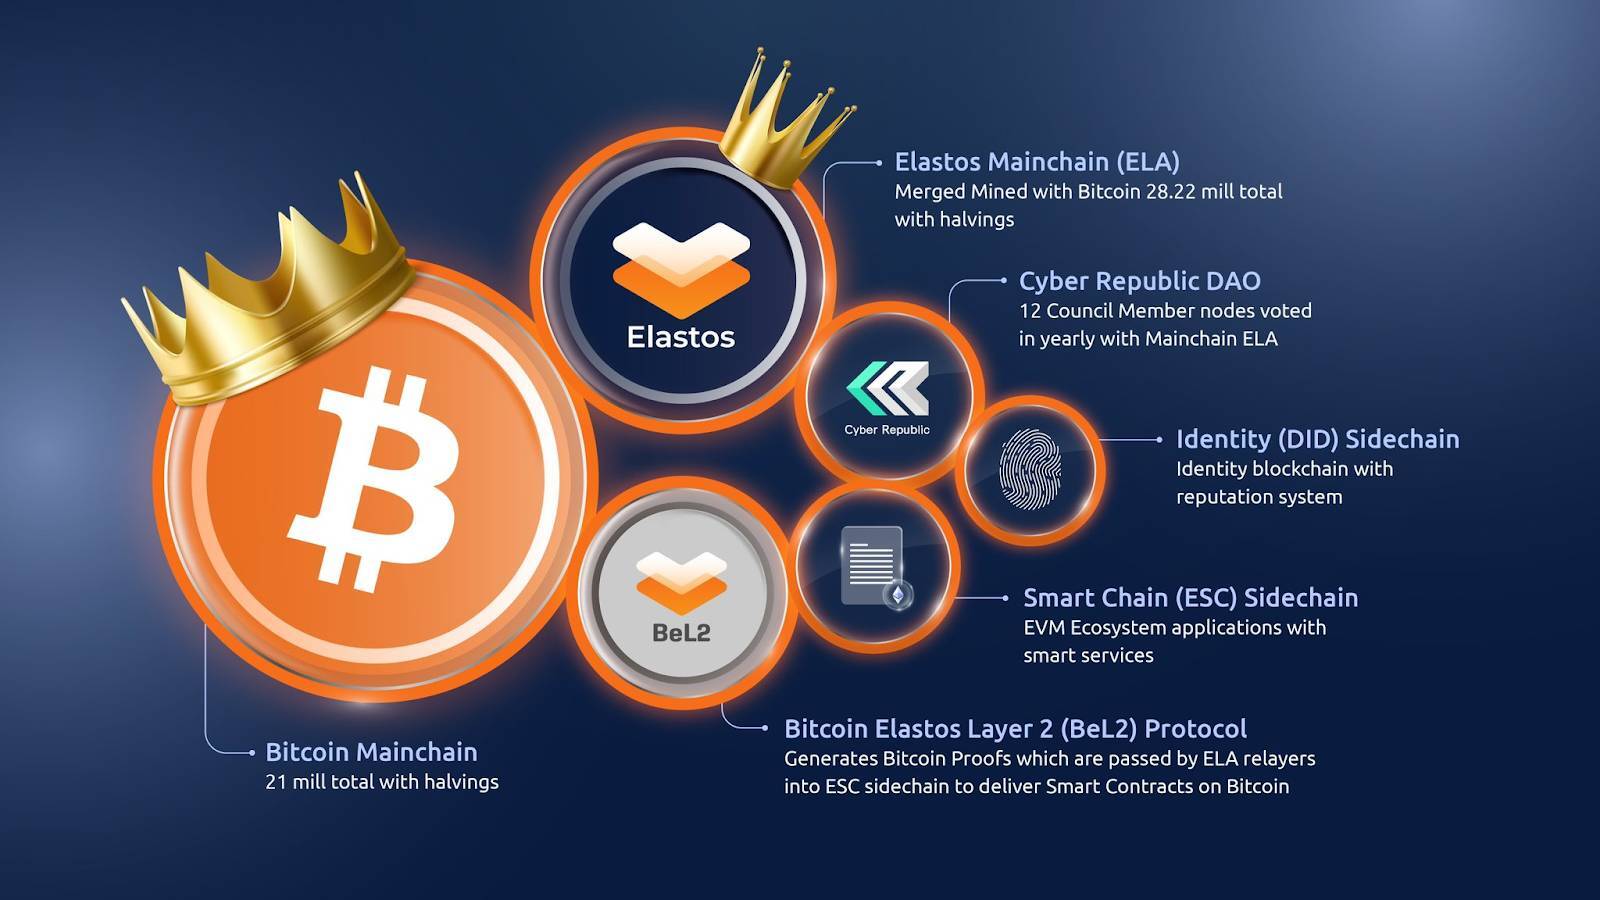 Elastos Là Gì Tìm Hiểu Về Bitcoin Layer 2 Hướng Đến Internet Phi Tập Trung